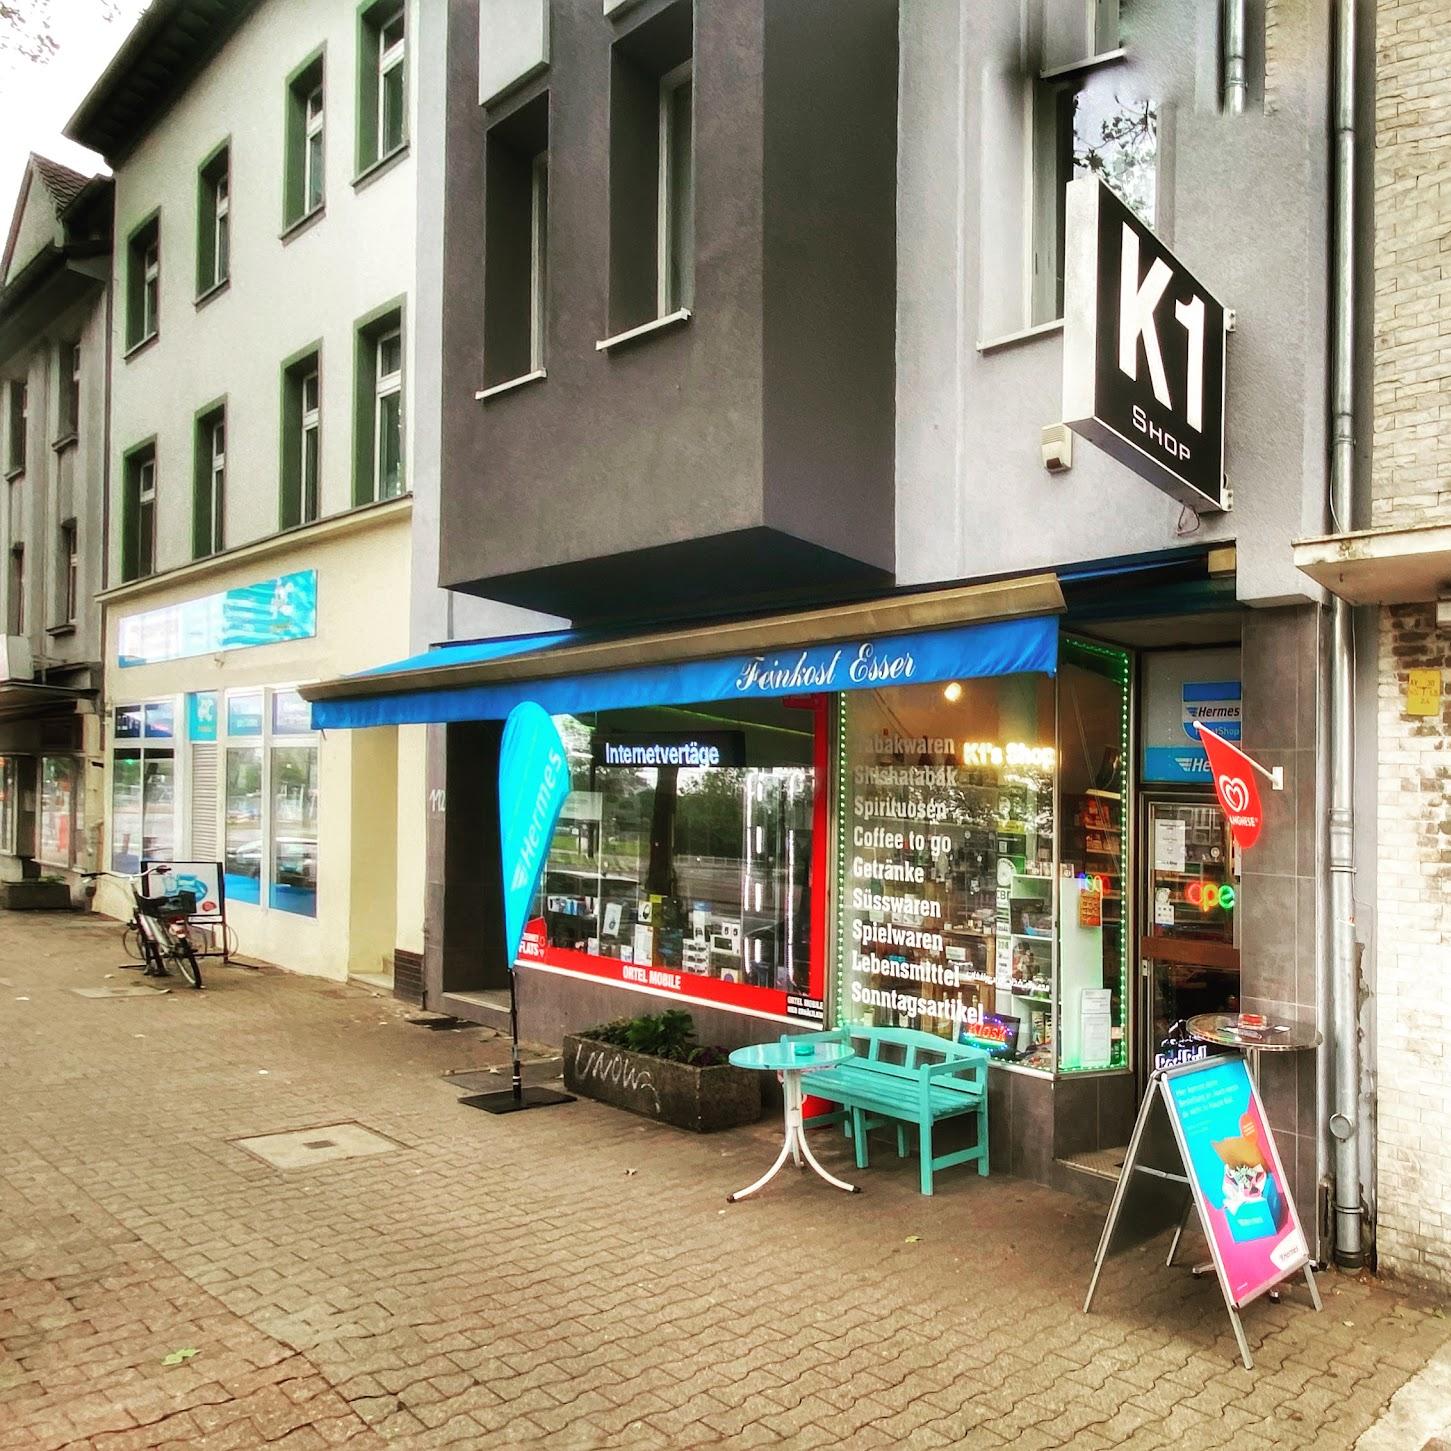 Restaurant "K1’s Shop (Kiosk)" in Düsseldorf